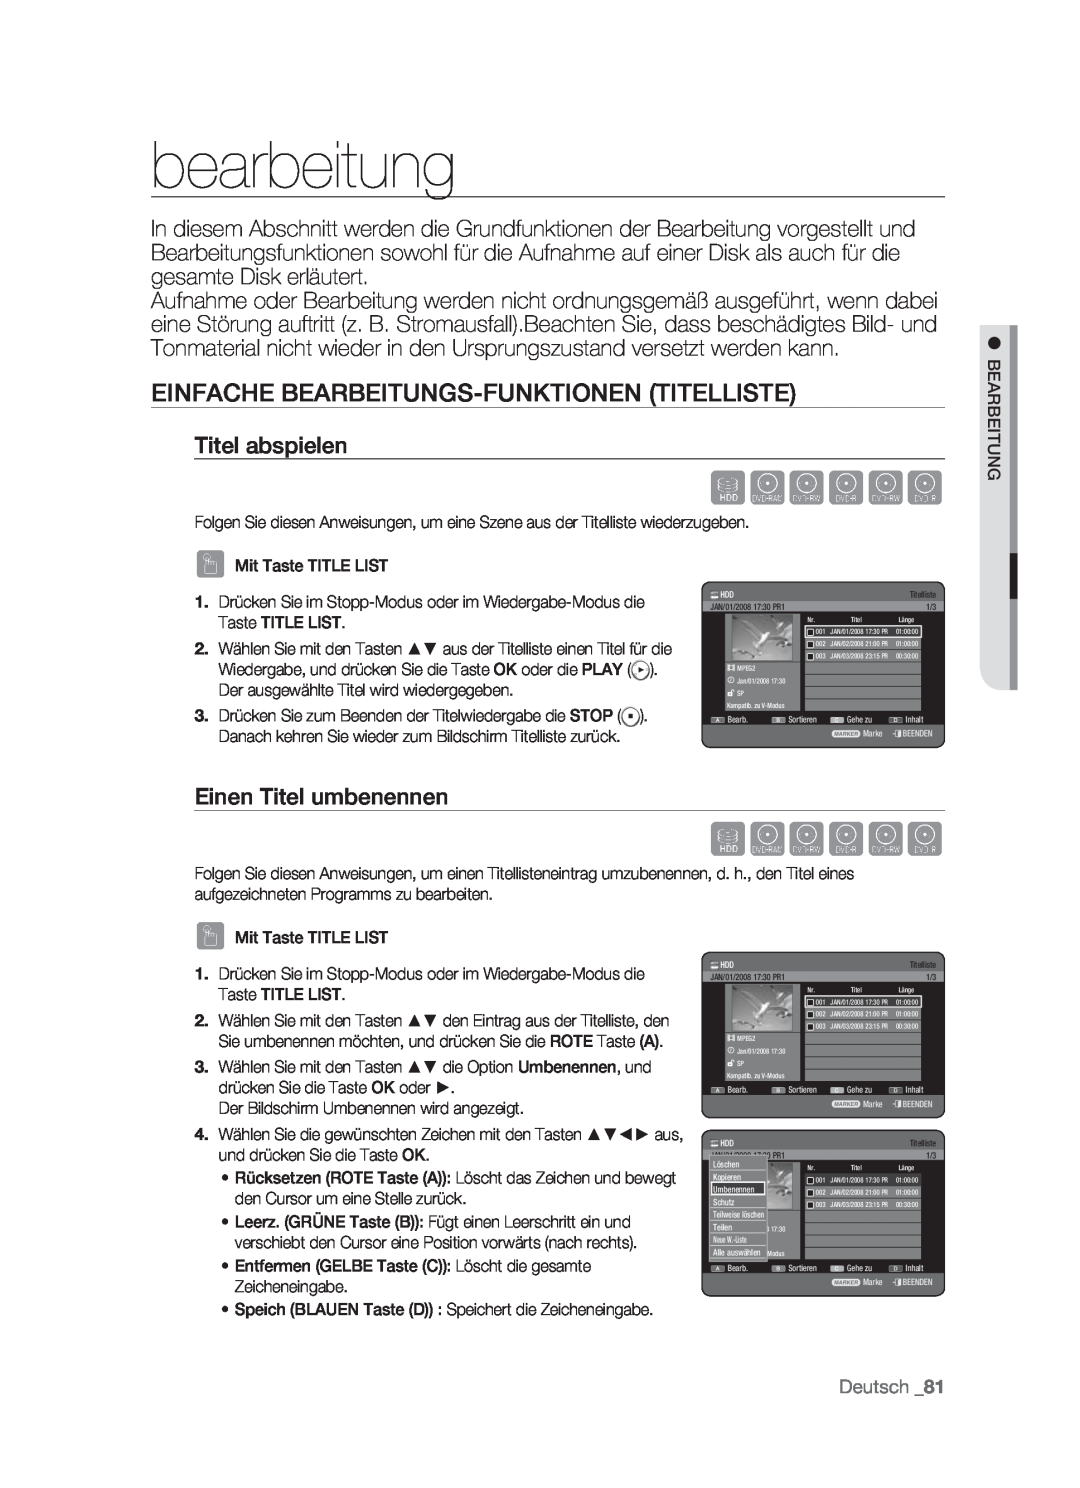 Samsung DVD-HR773/XEB bearbeitung, Einfache Bearbeitungs-Funktionen Titelliste, Titel abspielen, Einen Titel umbenennen 